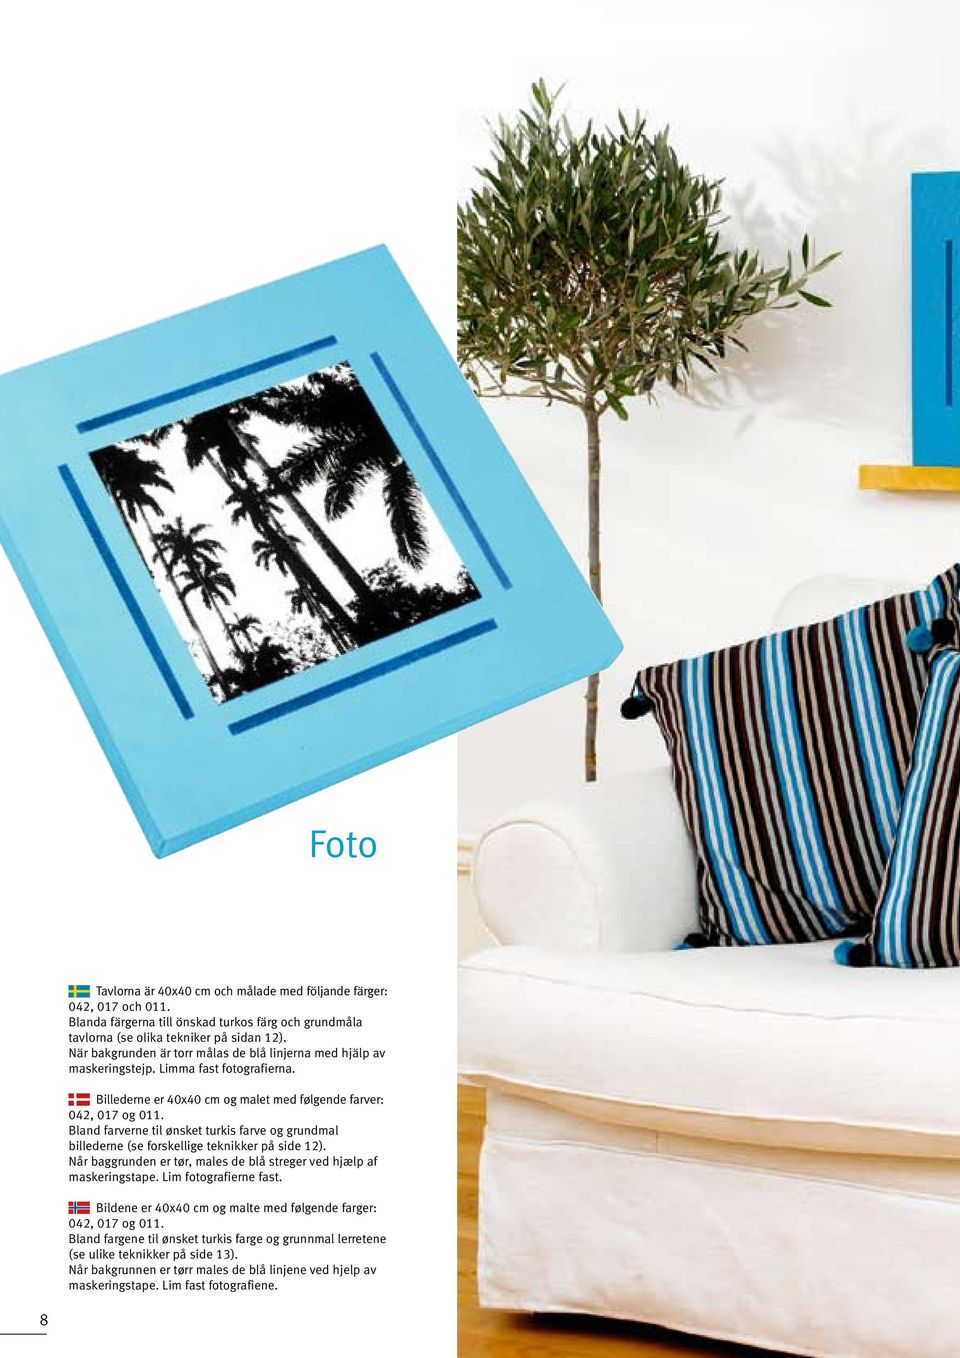 Bland farverne til ønsket turkis farve og grundmal billederne (se forskellige teknikker på side 12). Når baggrunden er tør, males de blå streger ved hjælp af maskeringstape. Lim fotografierne fast.